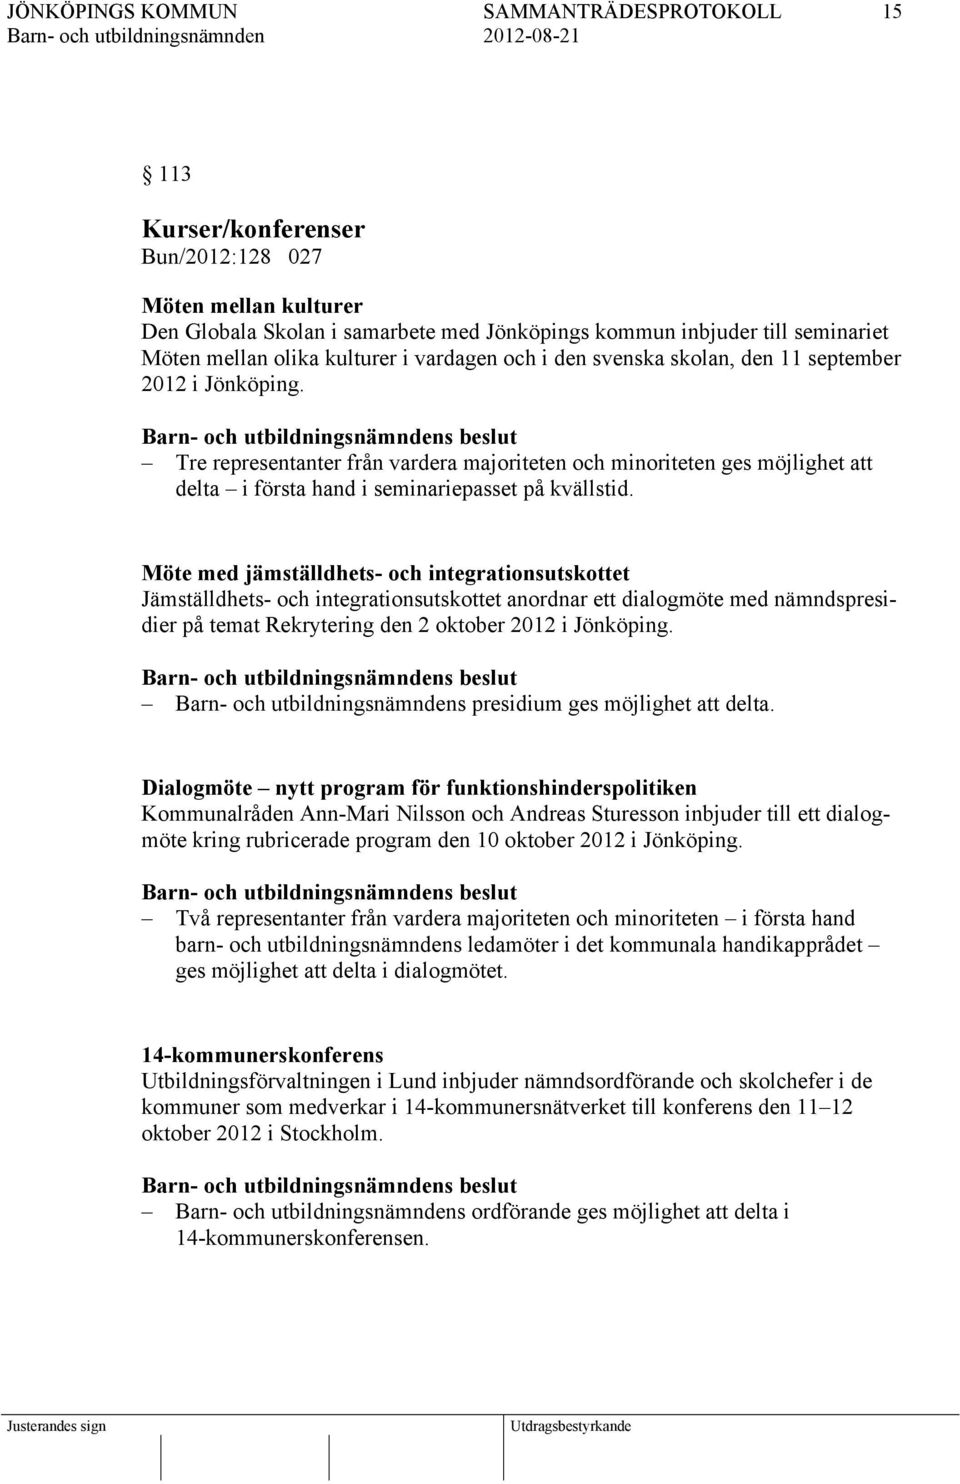 Möte med jämställdhets- och integrationsutskottet Jämställdhets- och integrationsutskottet anordnar ett dialogmöte med nämndspresidier på temat Rekrytering den 2 oktober 2012 i Jönköping.